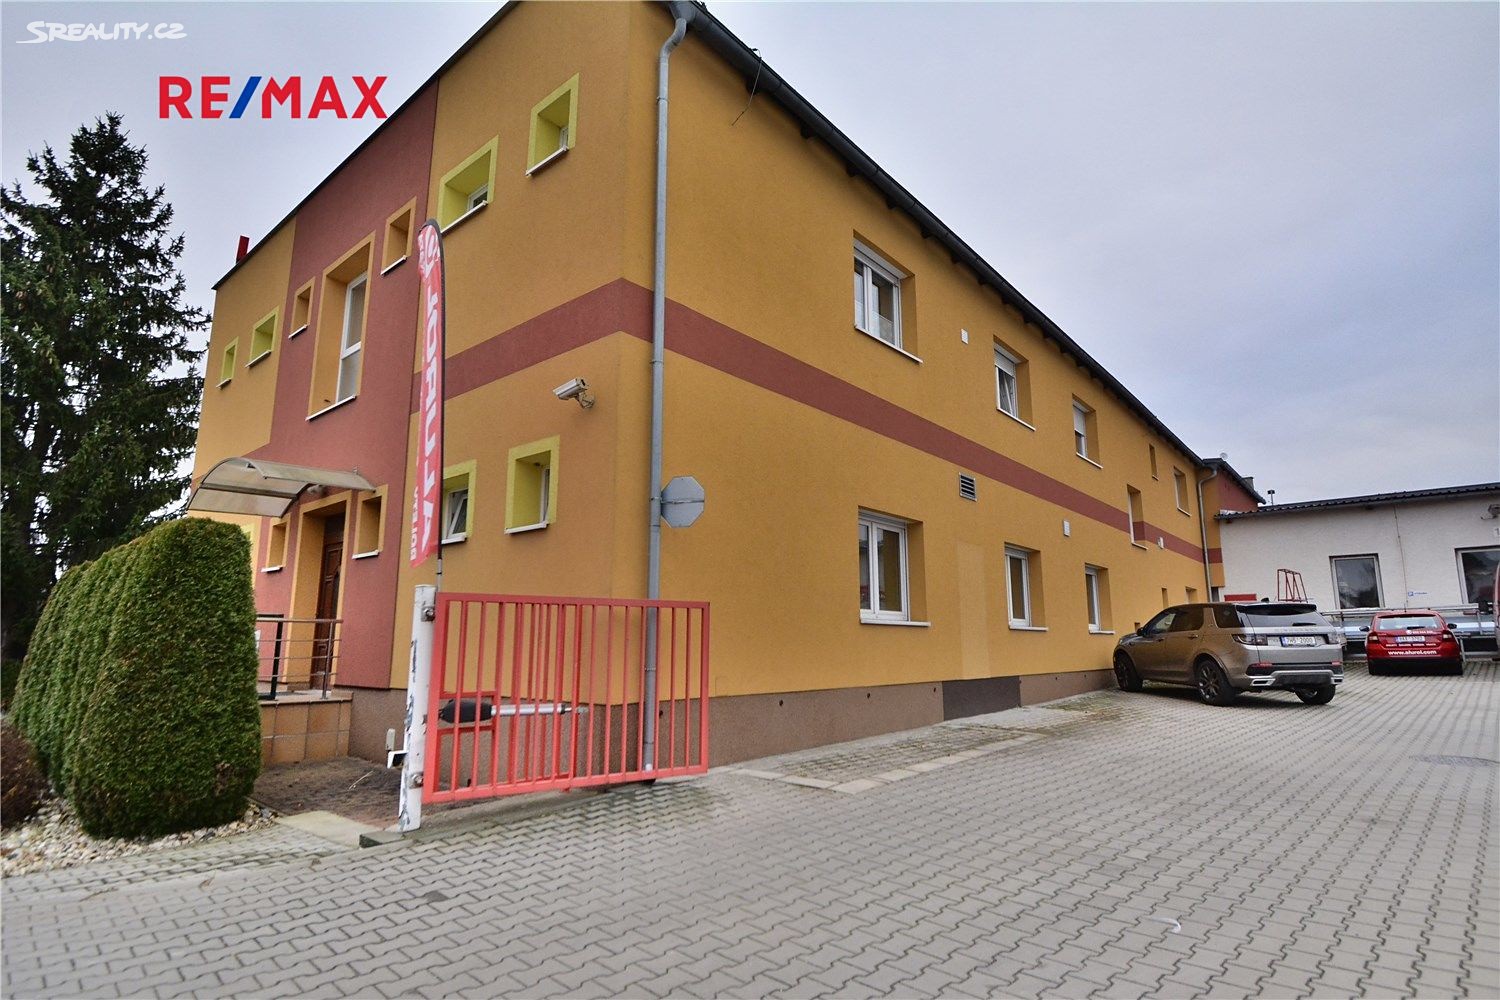 Prodej bytu 1+kk 27 m², Kpt. Jaroše, Nové Město nad Metují - Krčín